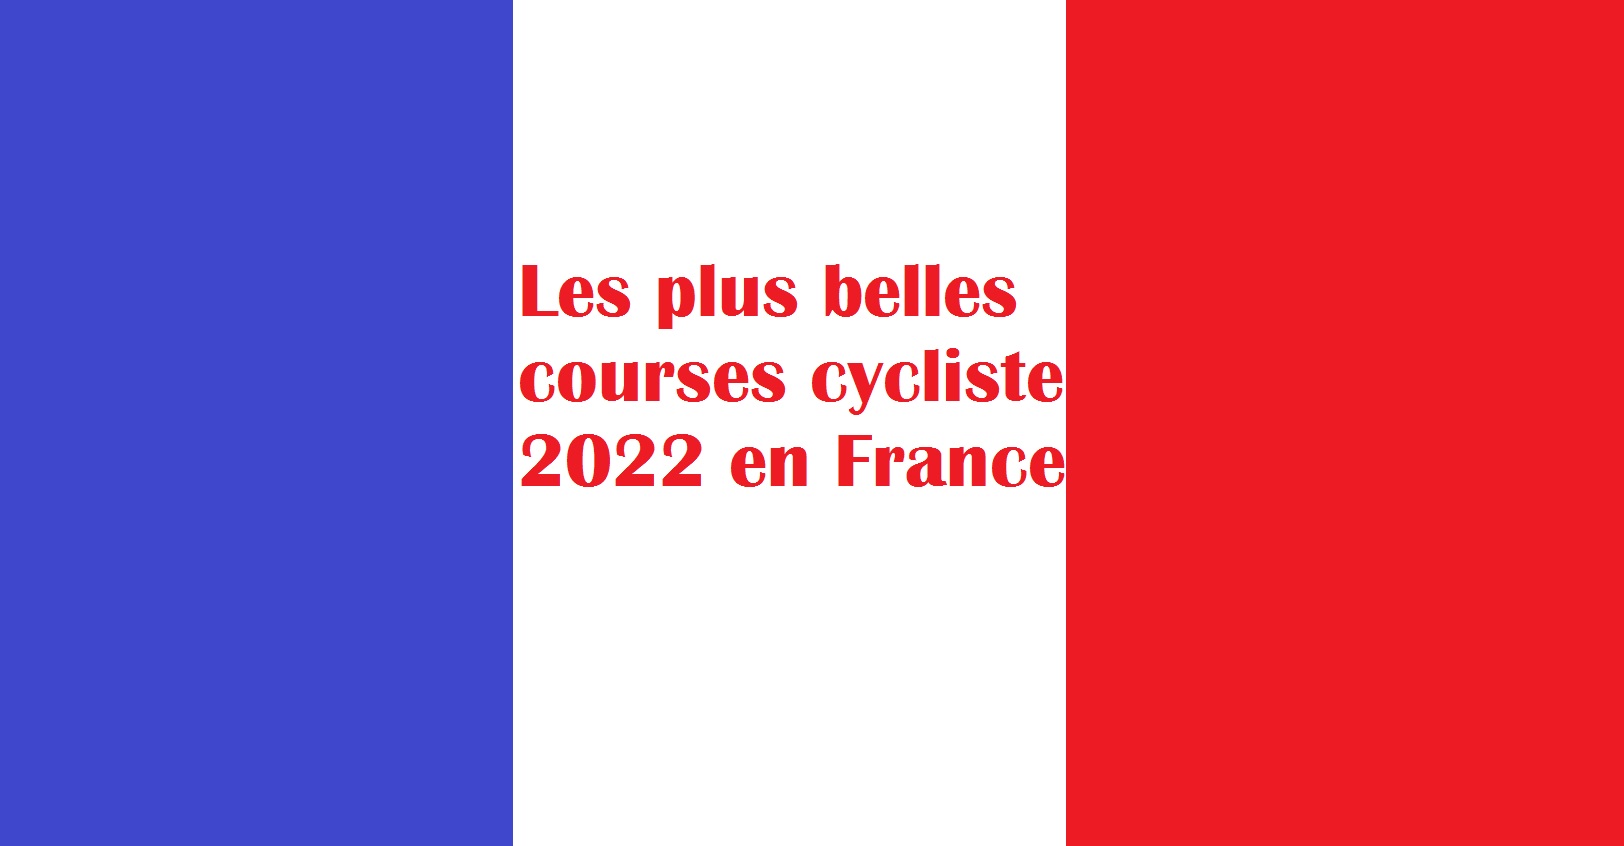 Les plus courses françaises 2022 de cyclisme